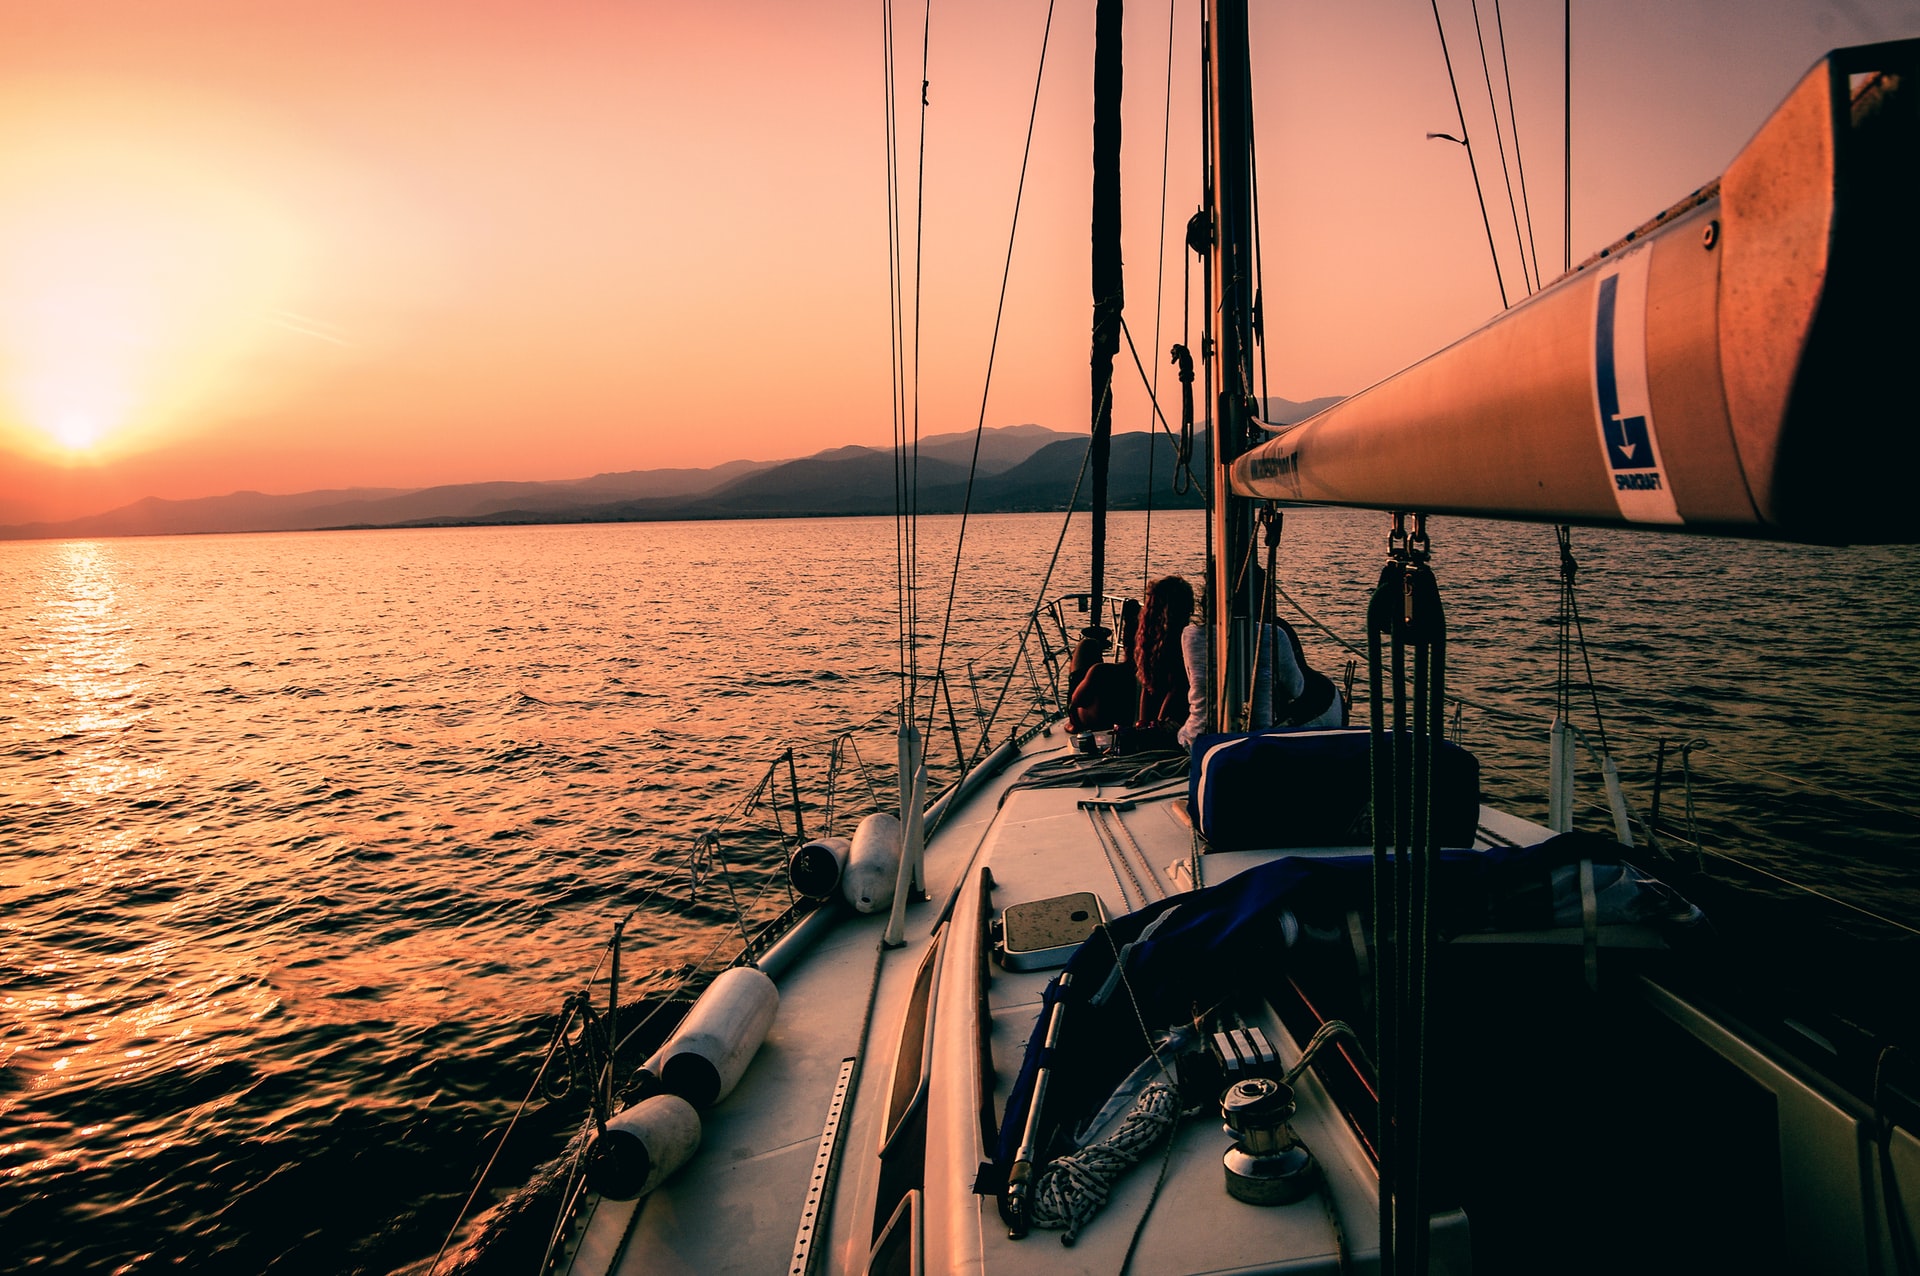 SAP y su socio Sailing Yacht Research Foundation (SYRF) anunciaron el lanzamiento de Sail Insight, una nueva app móvil diseñada para navegación a vela.